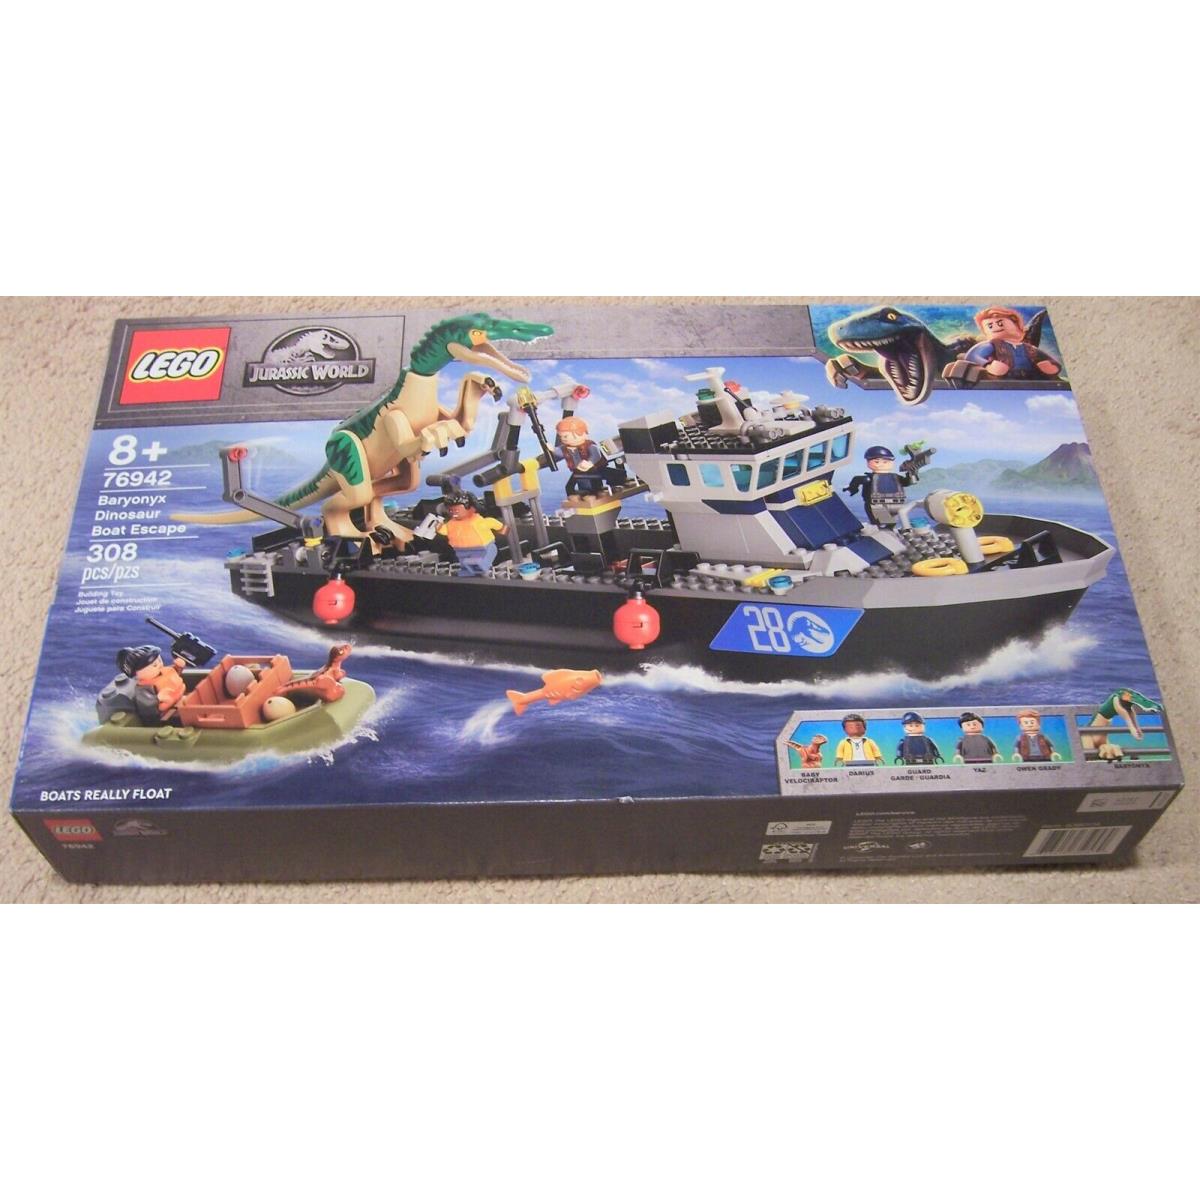 Lego Jurassic World Baryonox Dinosaur Boat Escape 76942 Set Owen Grady